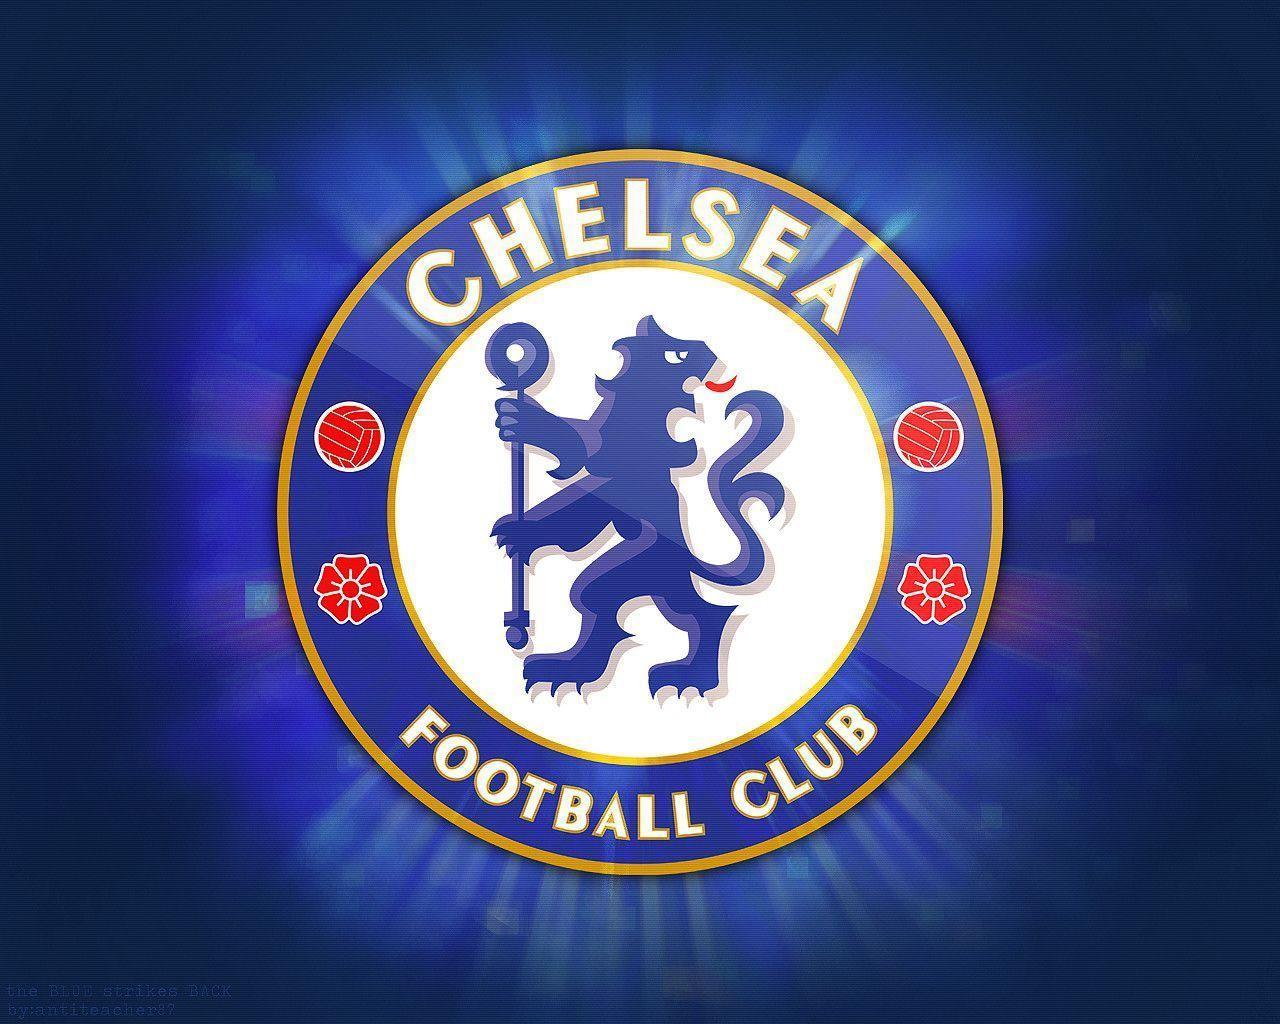 Chelsea FC Wallpaper. Free HD Wallpaper Desktop